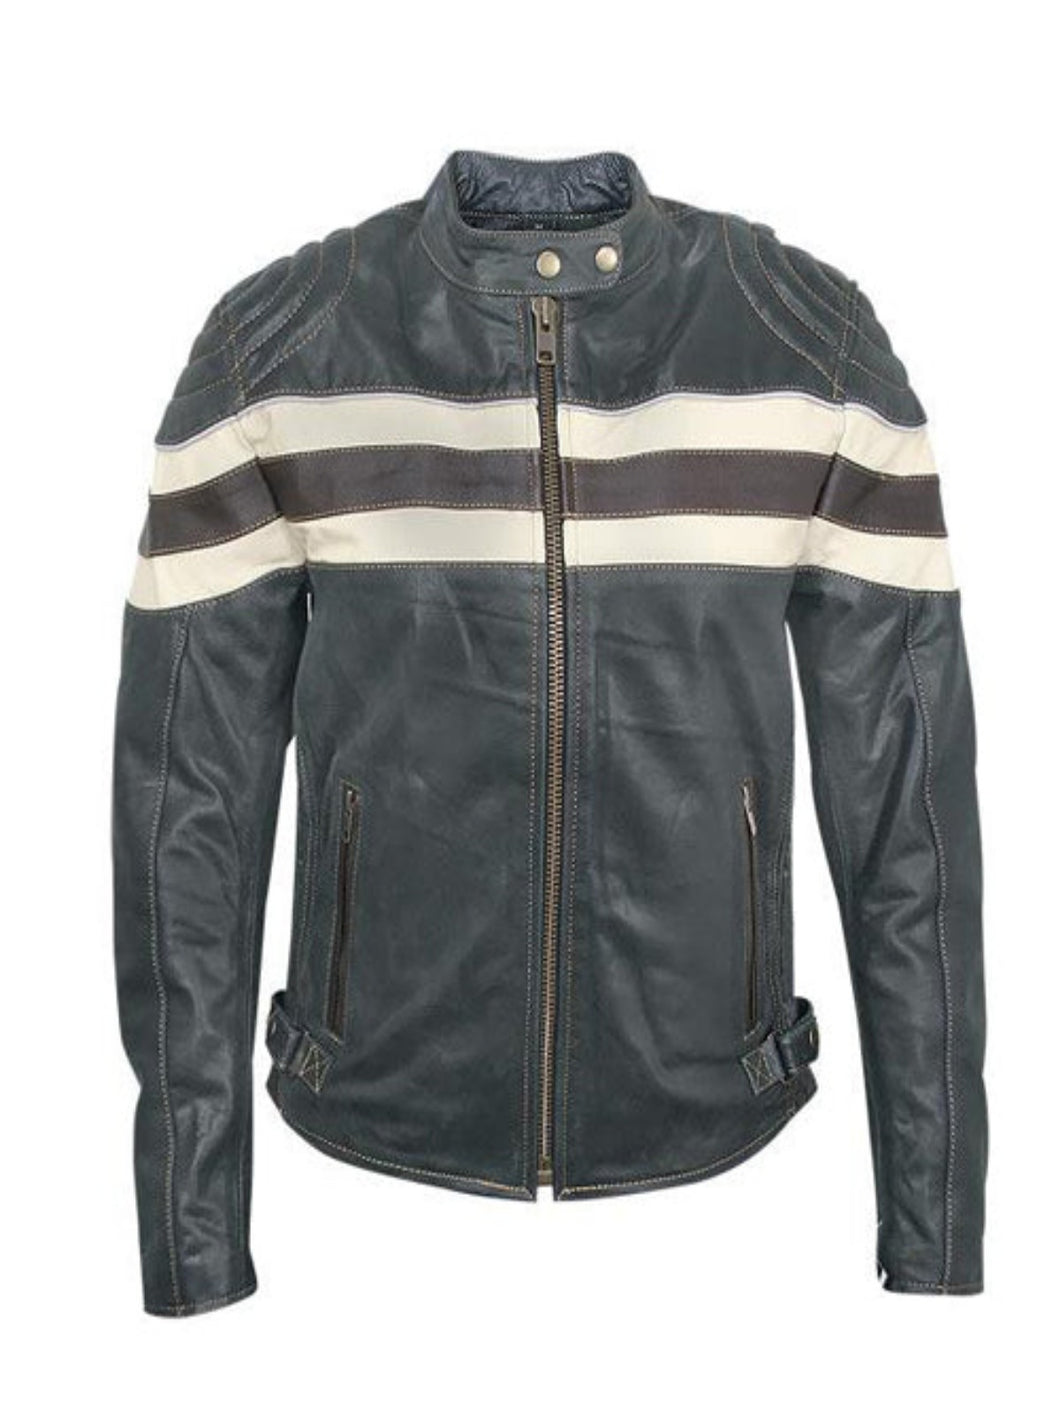 Mens Smooth Reflective Black Biker Leather Jacket